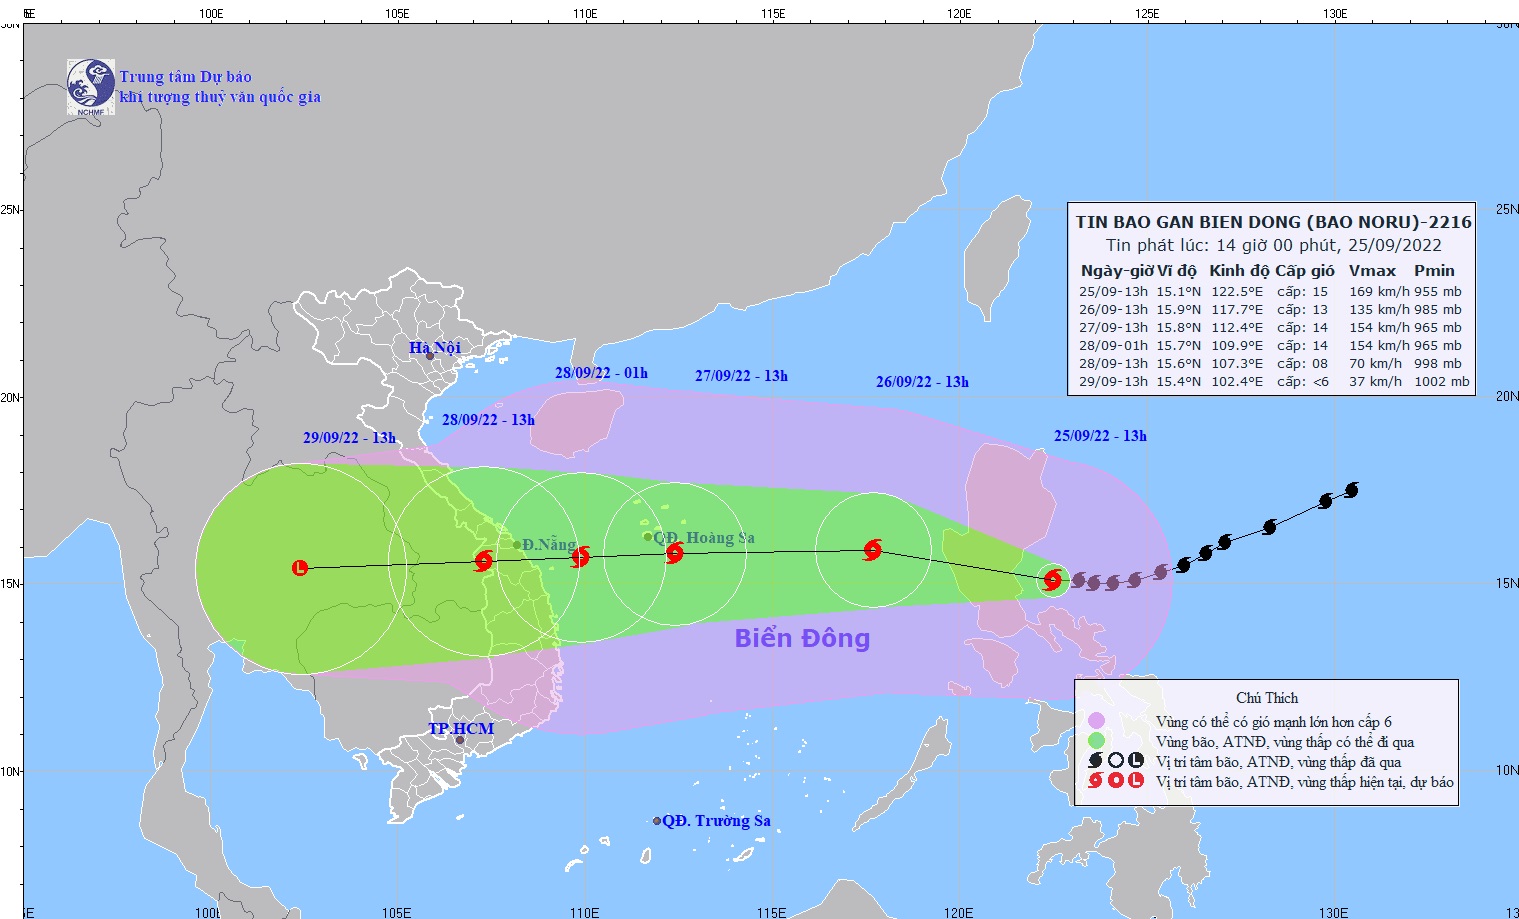 CẬP NHẬT: Siêu bão NORU tiến nhanh vào Biển Đông; Thủ tướng Chính phủ chỉ đạo khẩn cấp ứng phó - Ảnh 2.